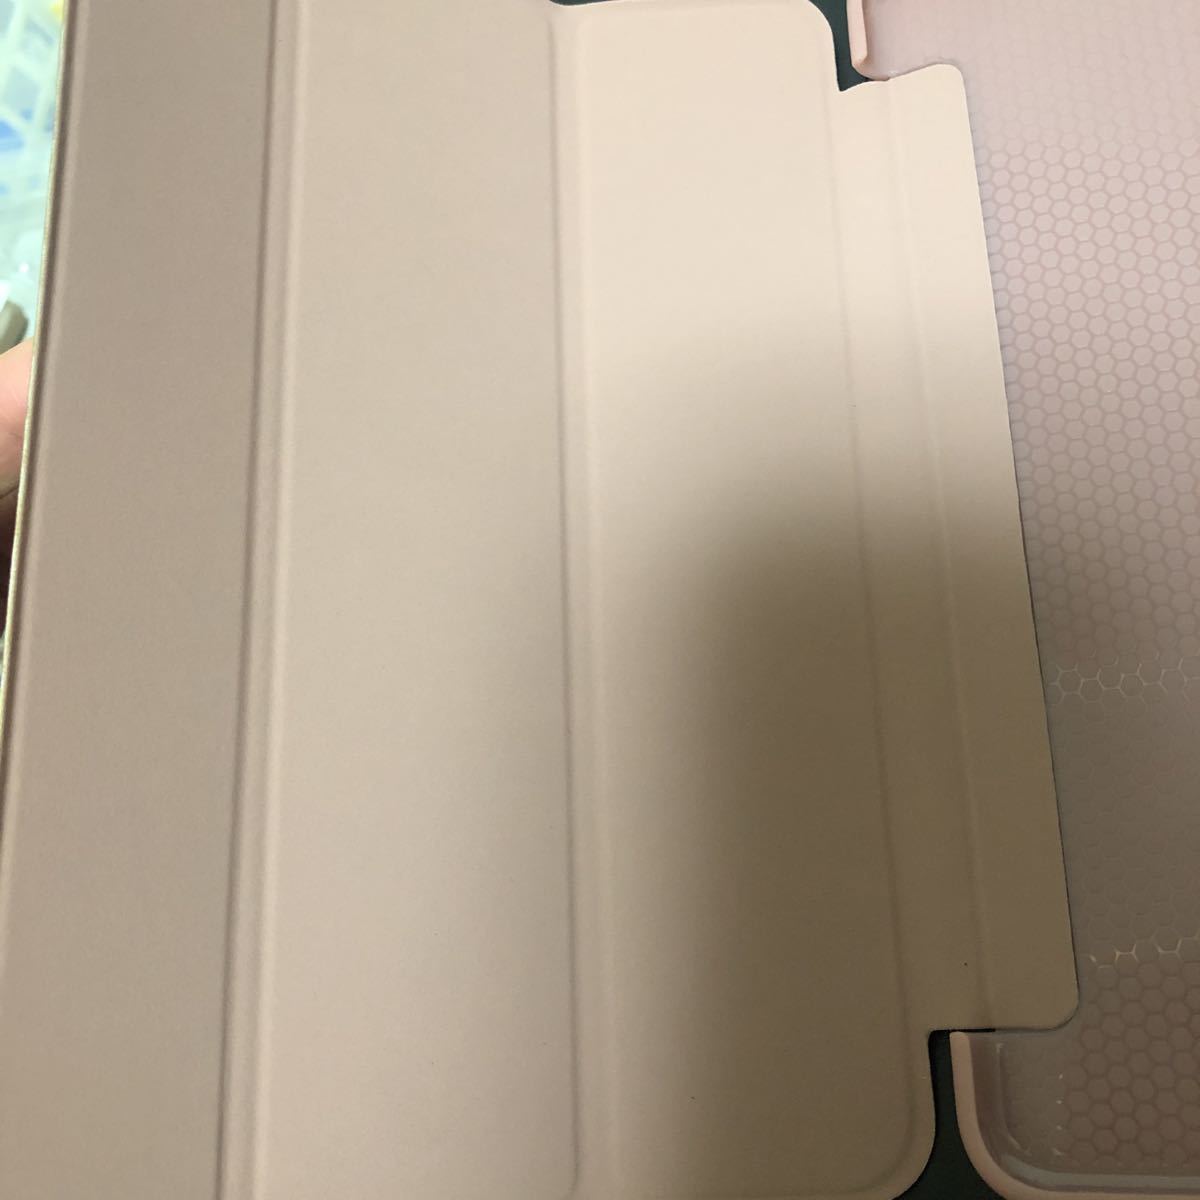 極薄 レザー 三つ折スタンド オートスリープ機能 手帳型 落下防止&衝撃吸収 擦り傷防止 卓上用 全面保護 (iPad mini5, ロースゴールド)_画像8